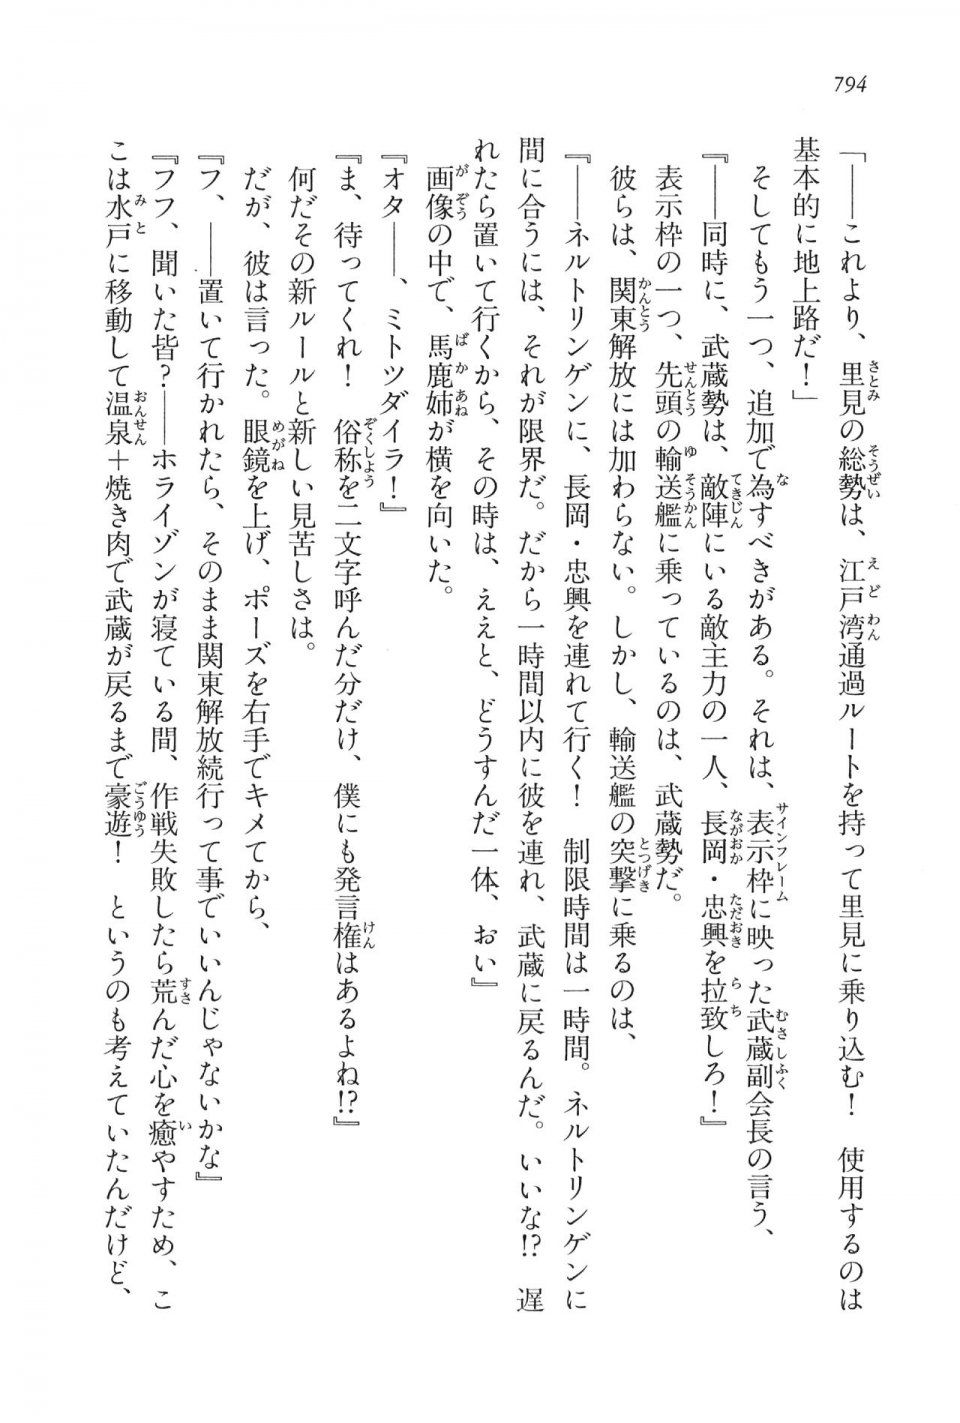 Kyoukai Senjou no Horizon LN Vol 16(7A) - Photo #794